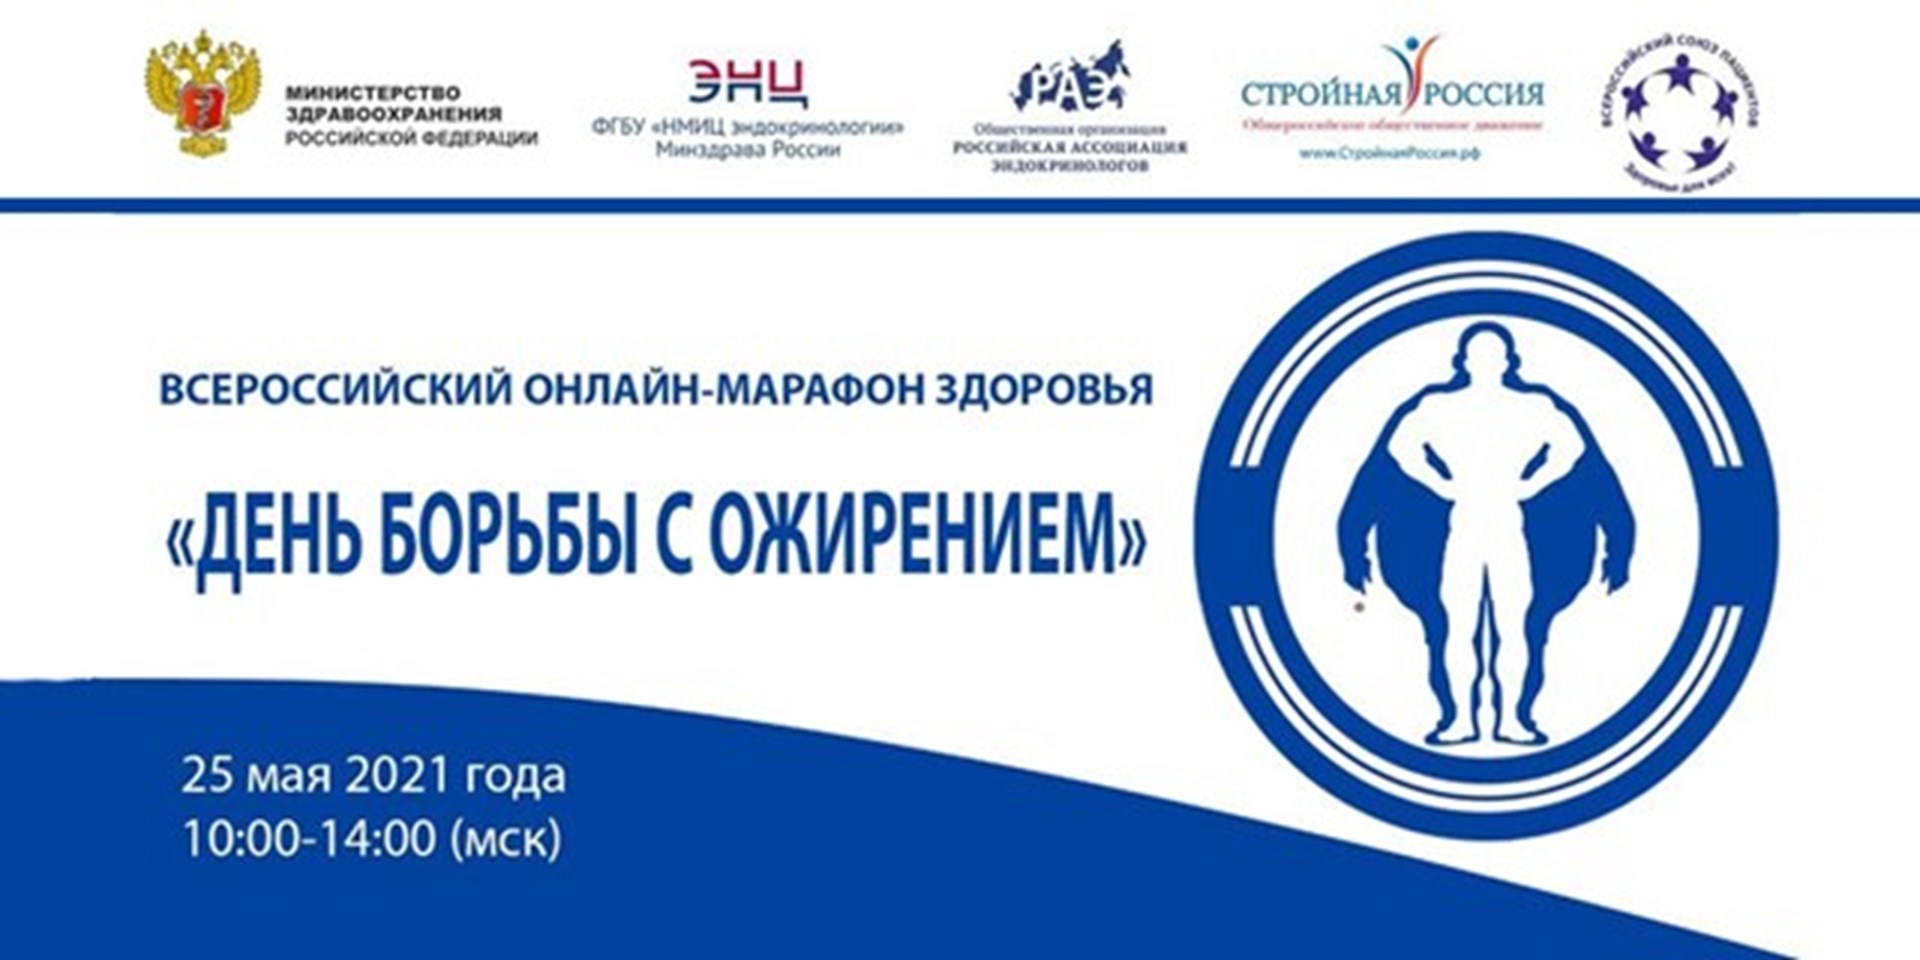 Москва. 25 мая 2021 г. с 10:00 до 14:00 мск. Всероссийский онлайн-марафон здоровья